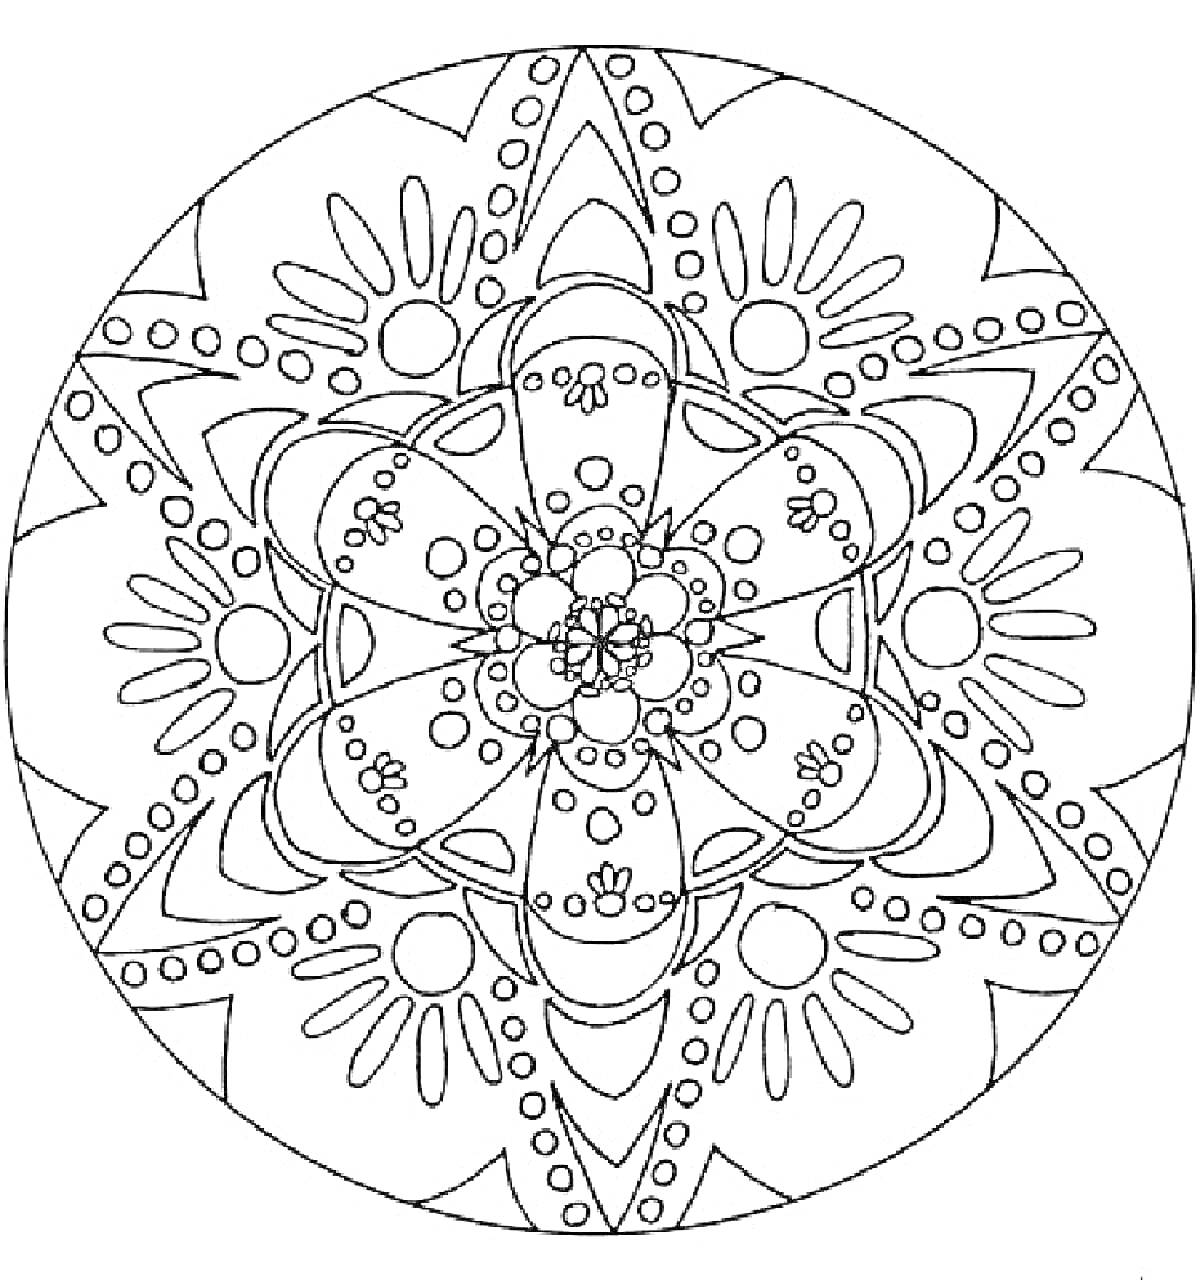 Раскраска Мандала с эллипсами, кругами и цветочными элементами на тему Нового года